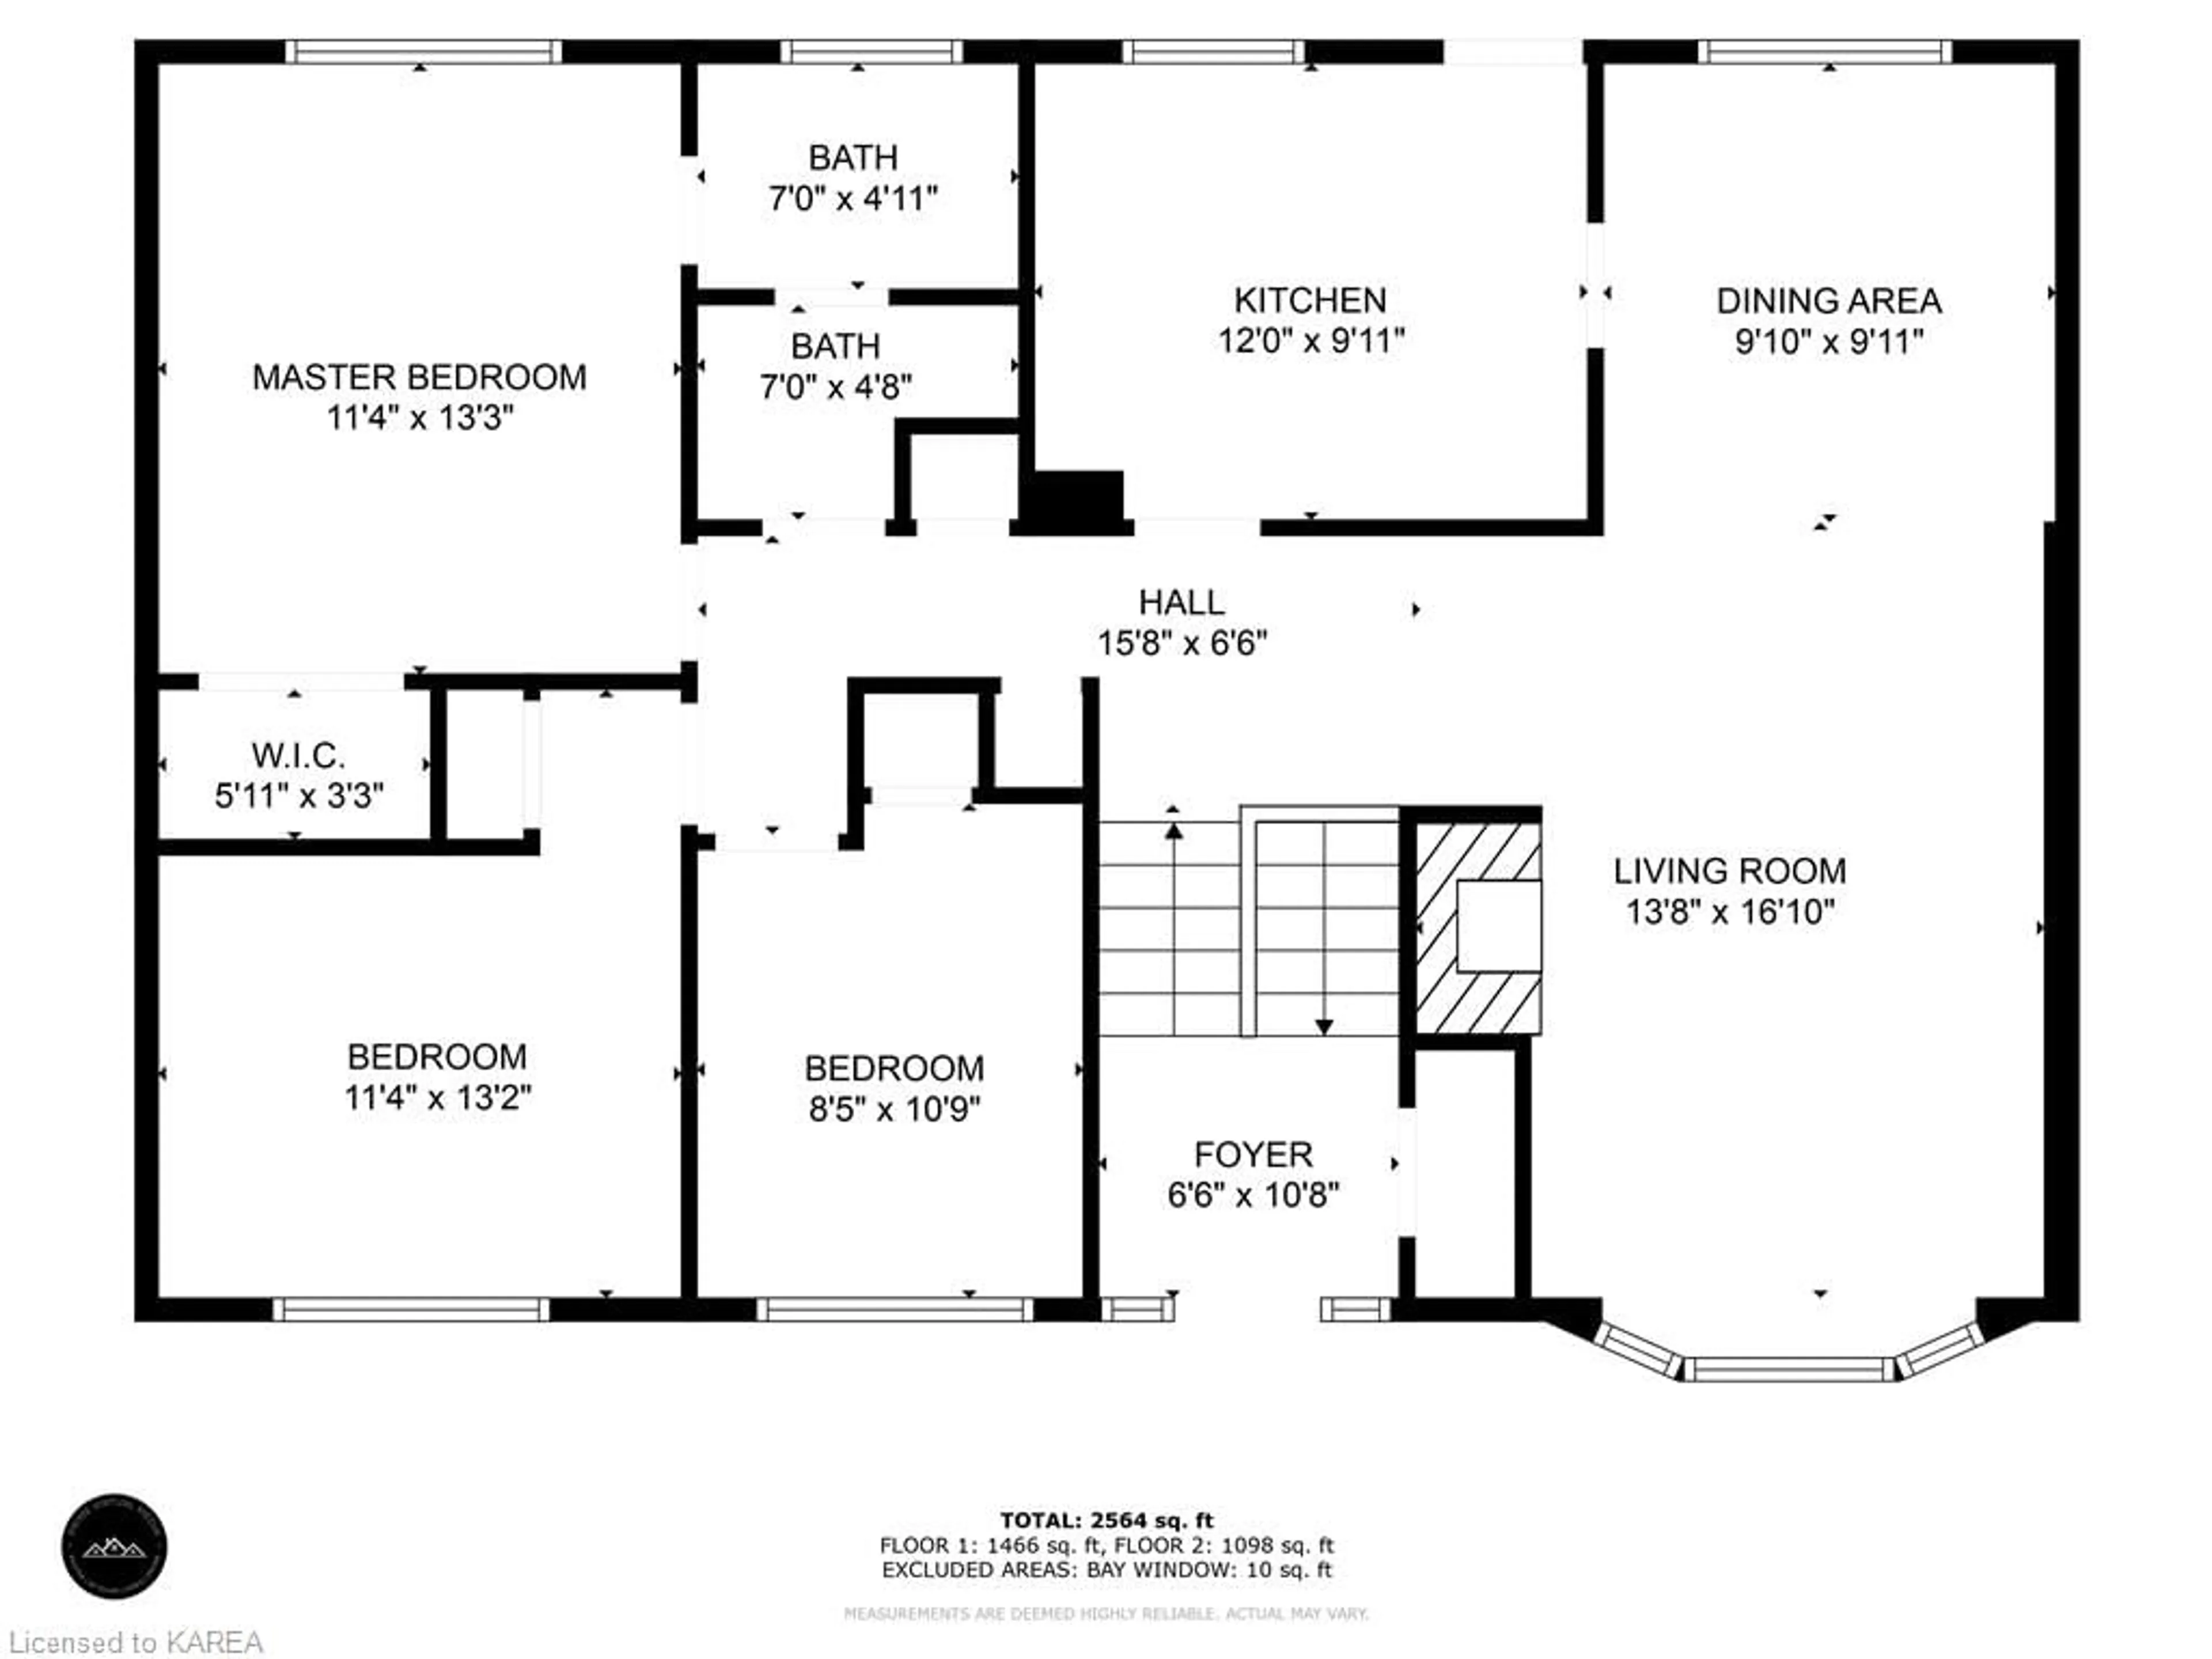 Floor plan for 715 High Gate Park Dr, Kingston Ontario K7M 5Z7